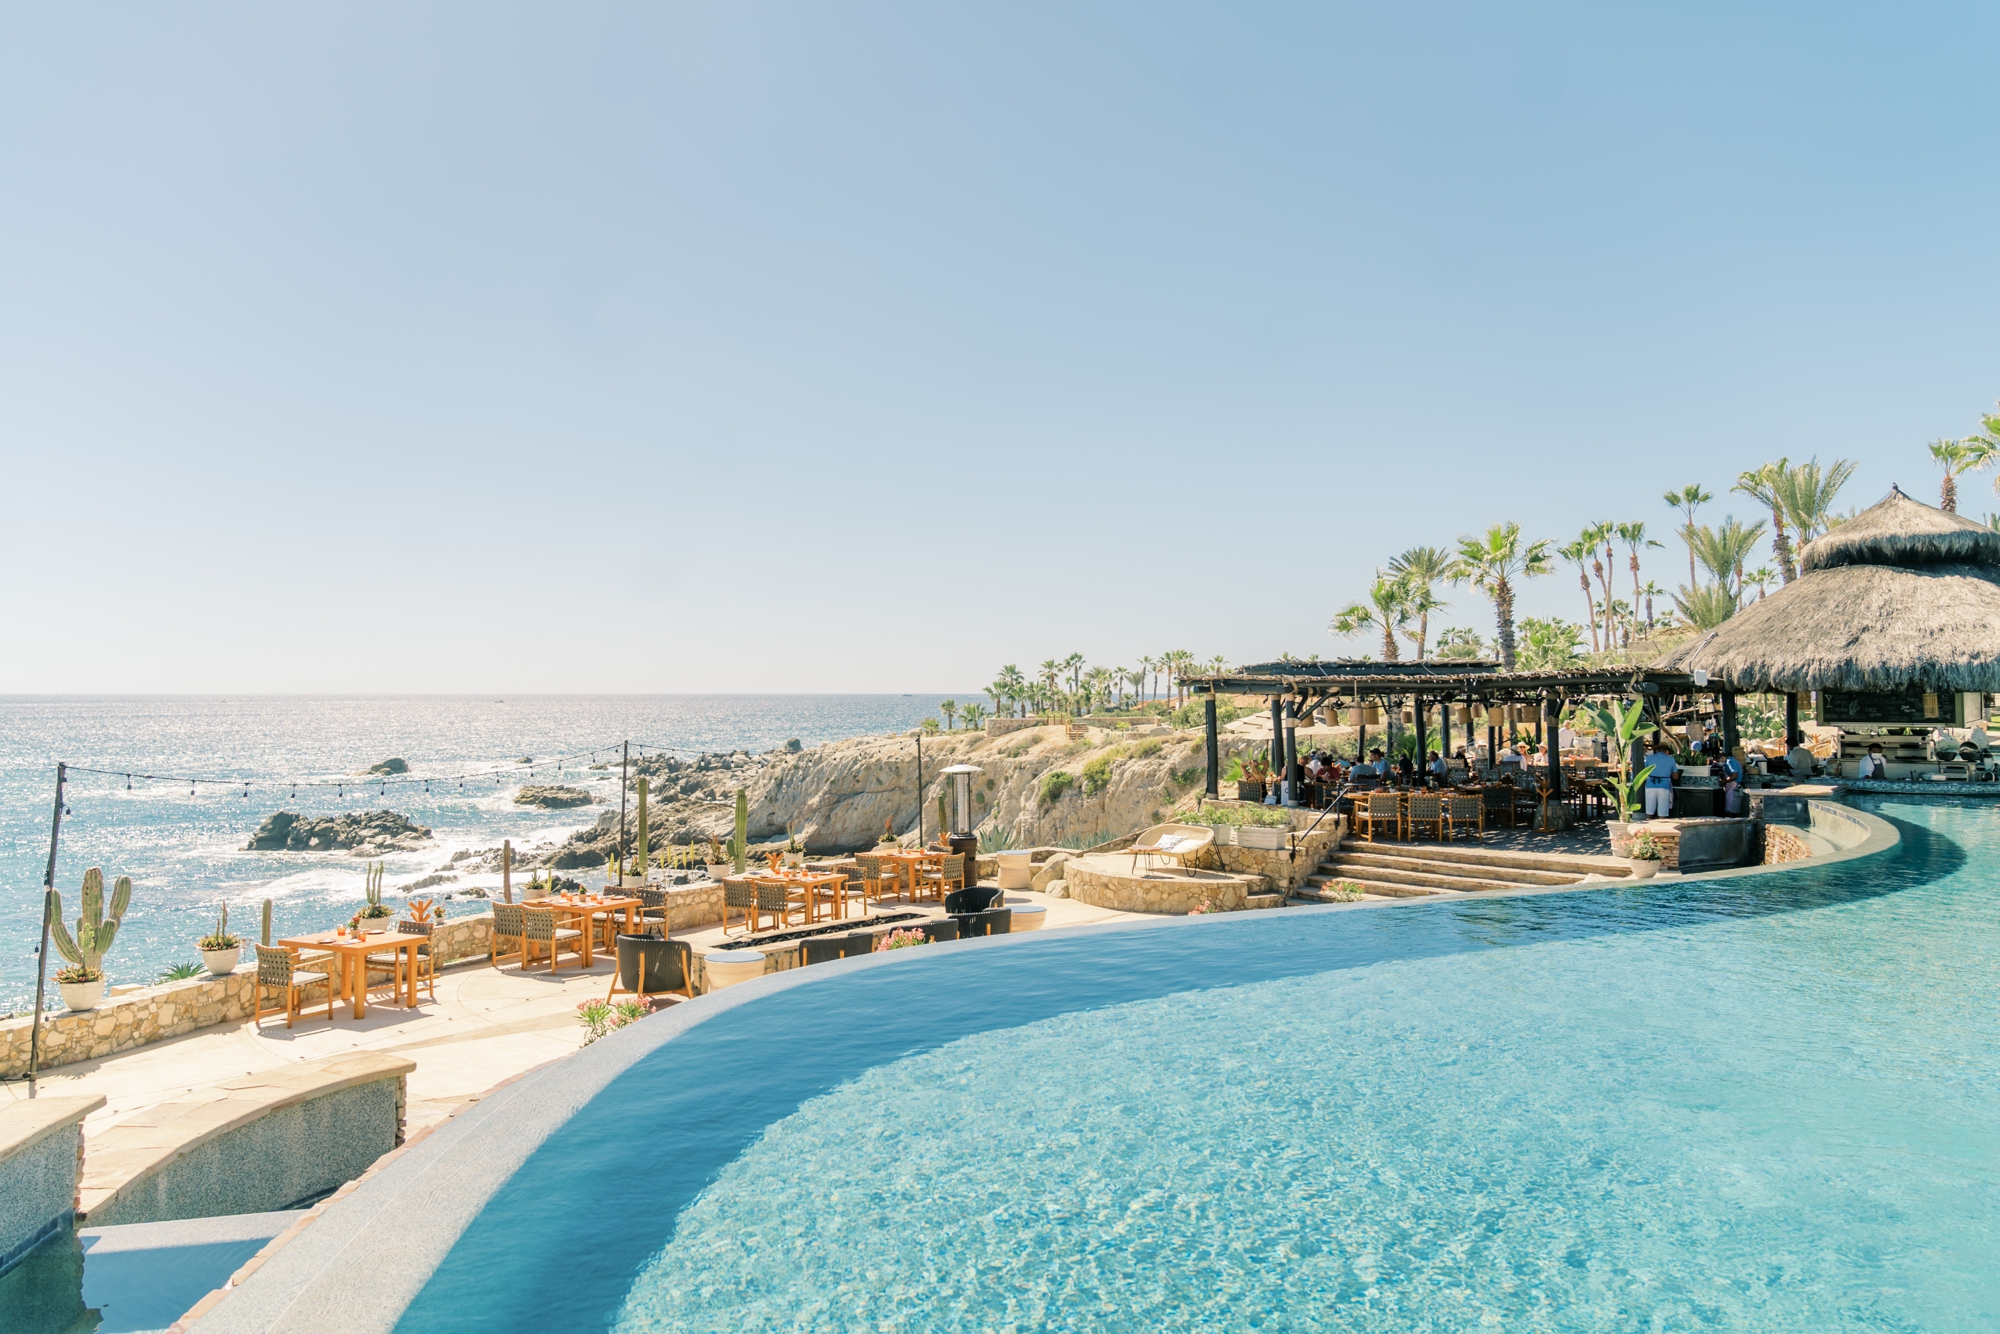 Esperanza Los Cabos pool overlooking the Baja peninsula